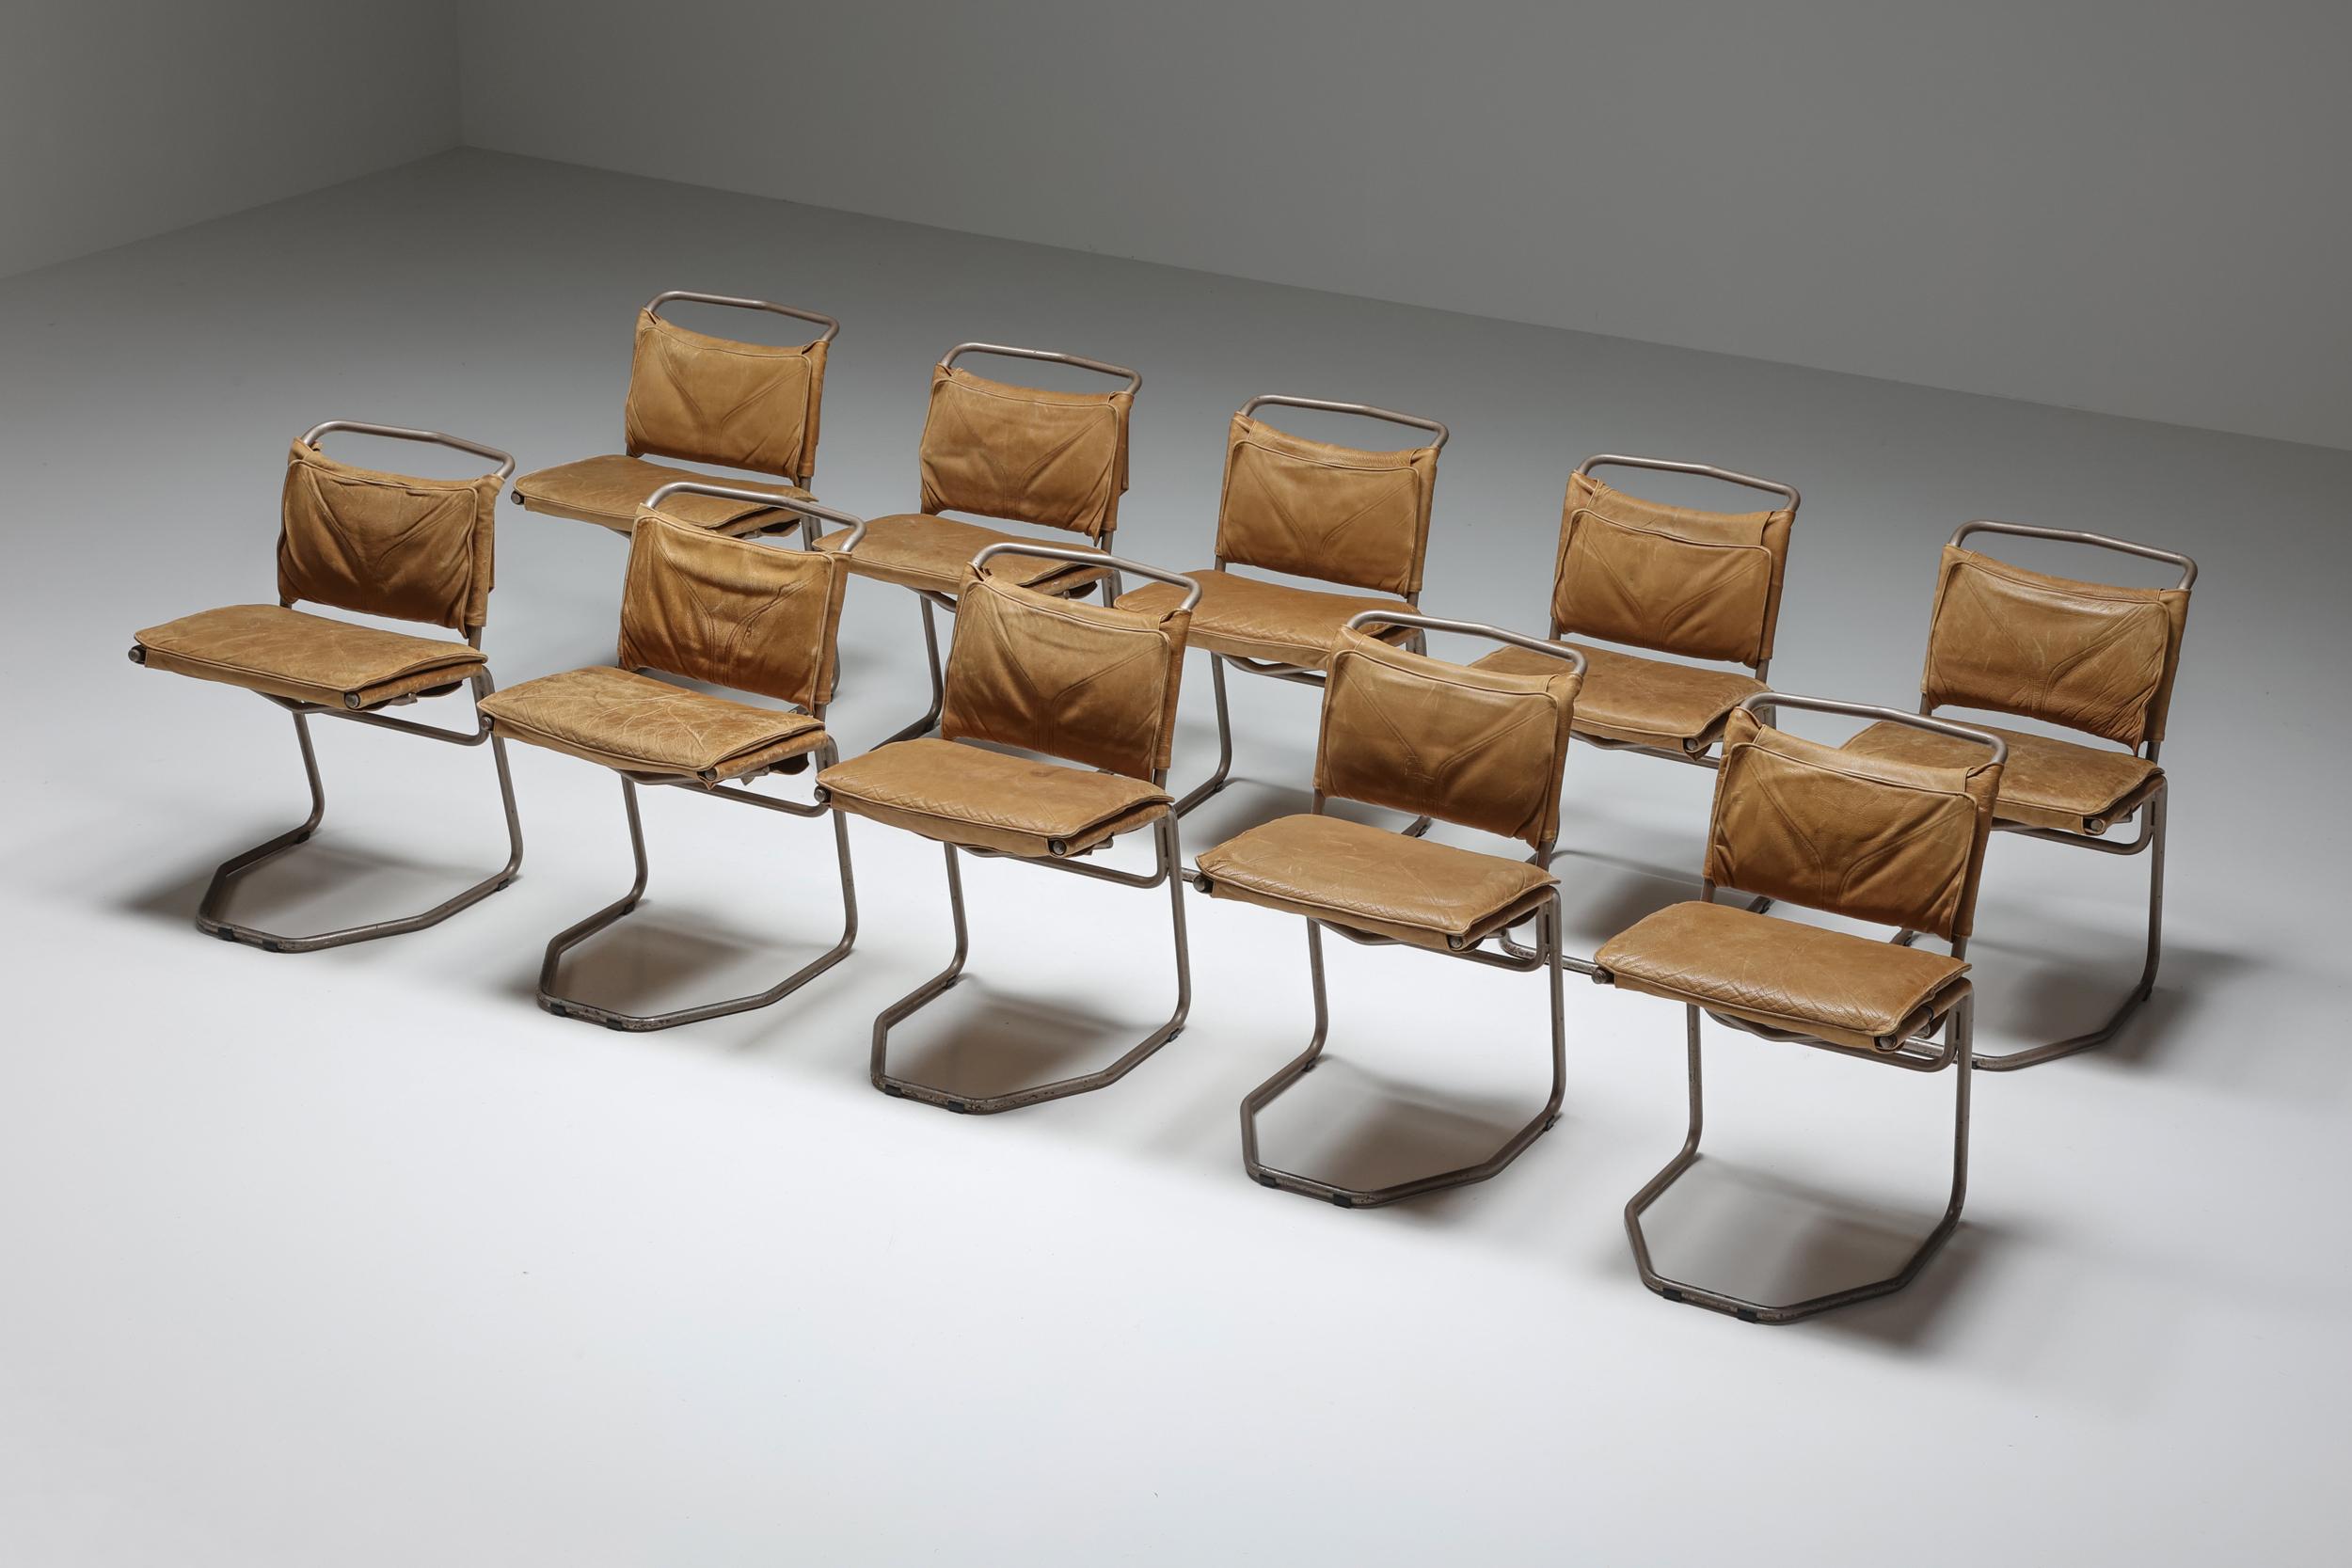 Außergewöhnliche Esszimmerstühle aus Stahl, entworfen von dem berühmten belgischen Architekten Raymond Rombouts. Diese Stühle, die mit einem scharfen Blick für Reinheit und Perfektionismus gefertigt werden, verkörpern die zeitlose Ästhetik von